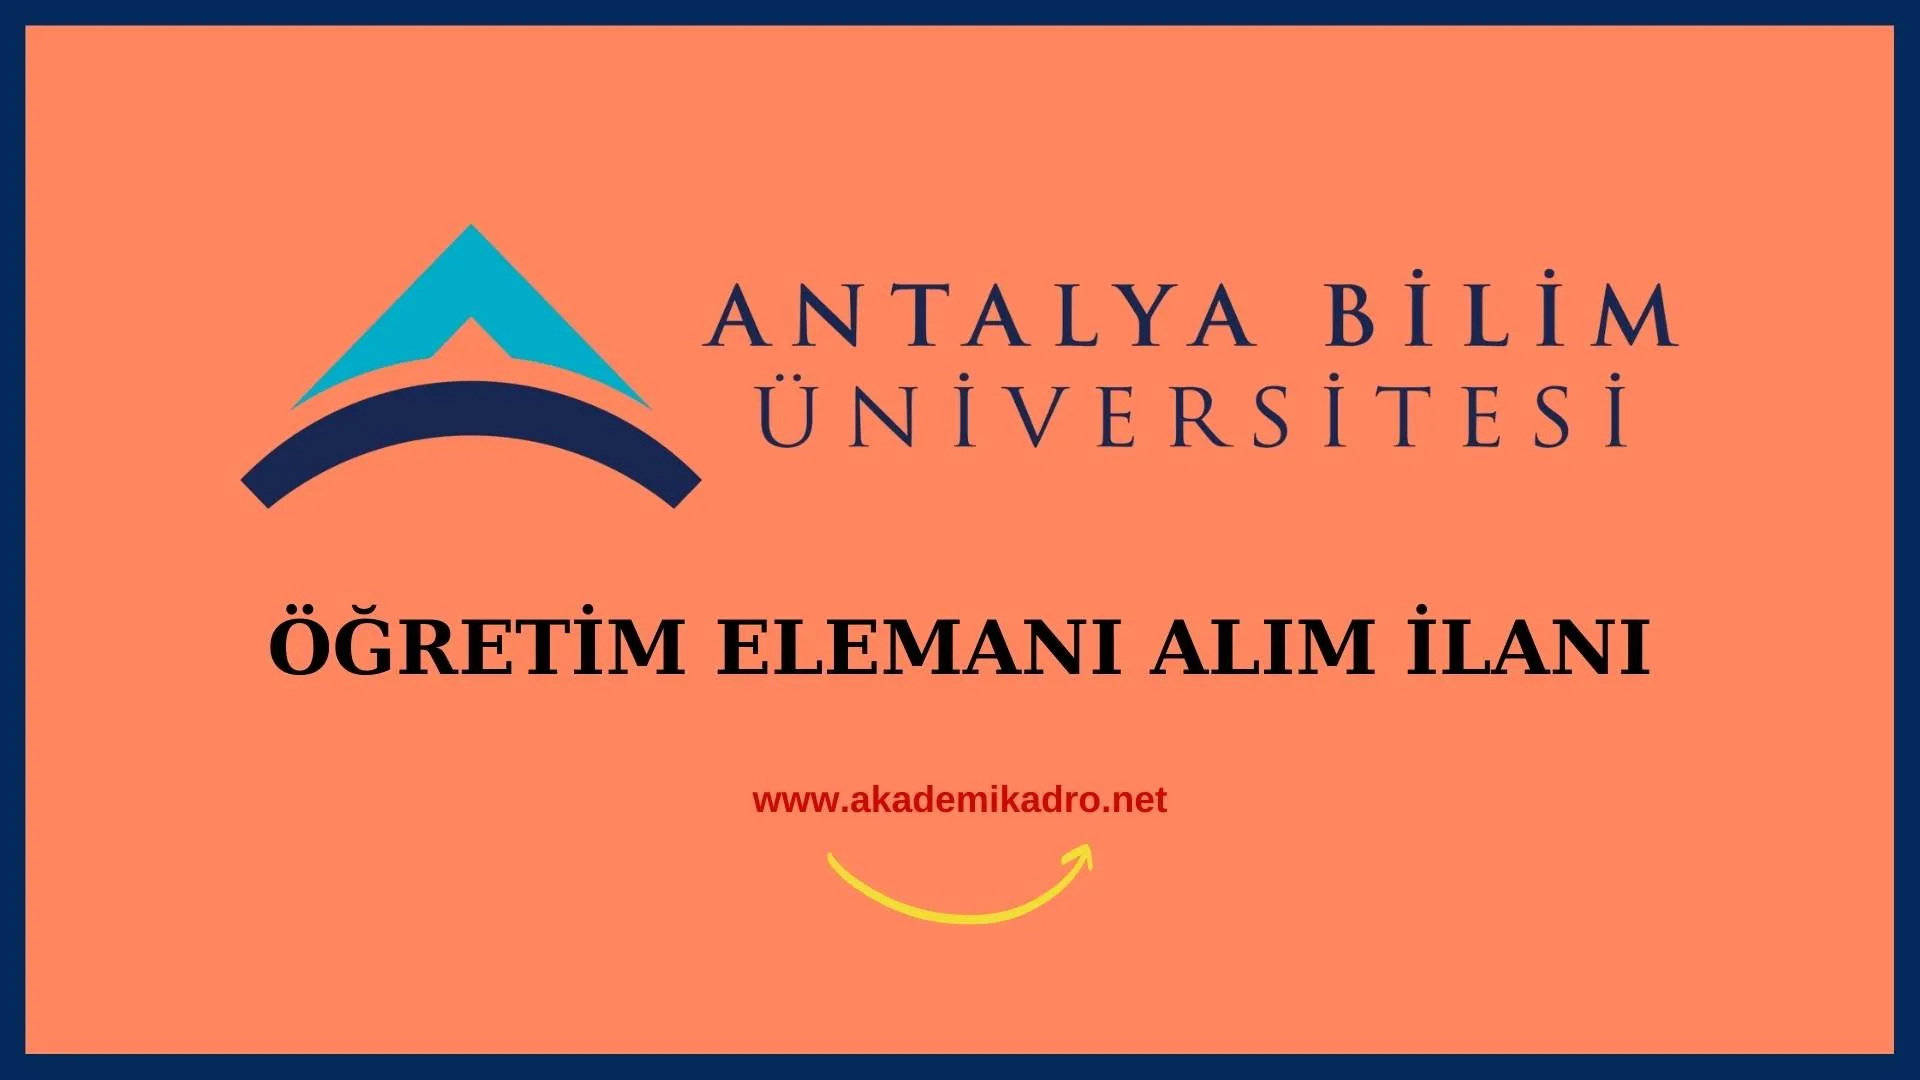 Antalya Bilim Üniversitesi Öğretim görevlisi ve Öğretim üyesi olomak üzere 28 Öğretim elemanı alacak.